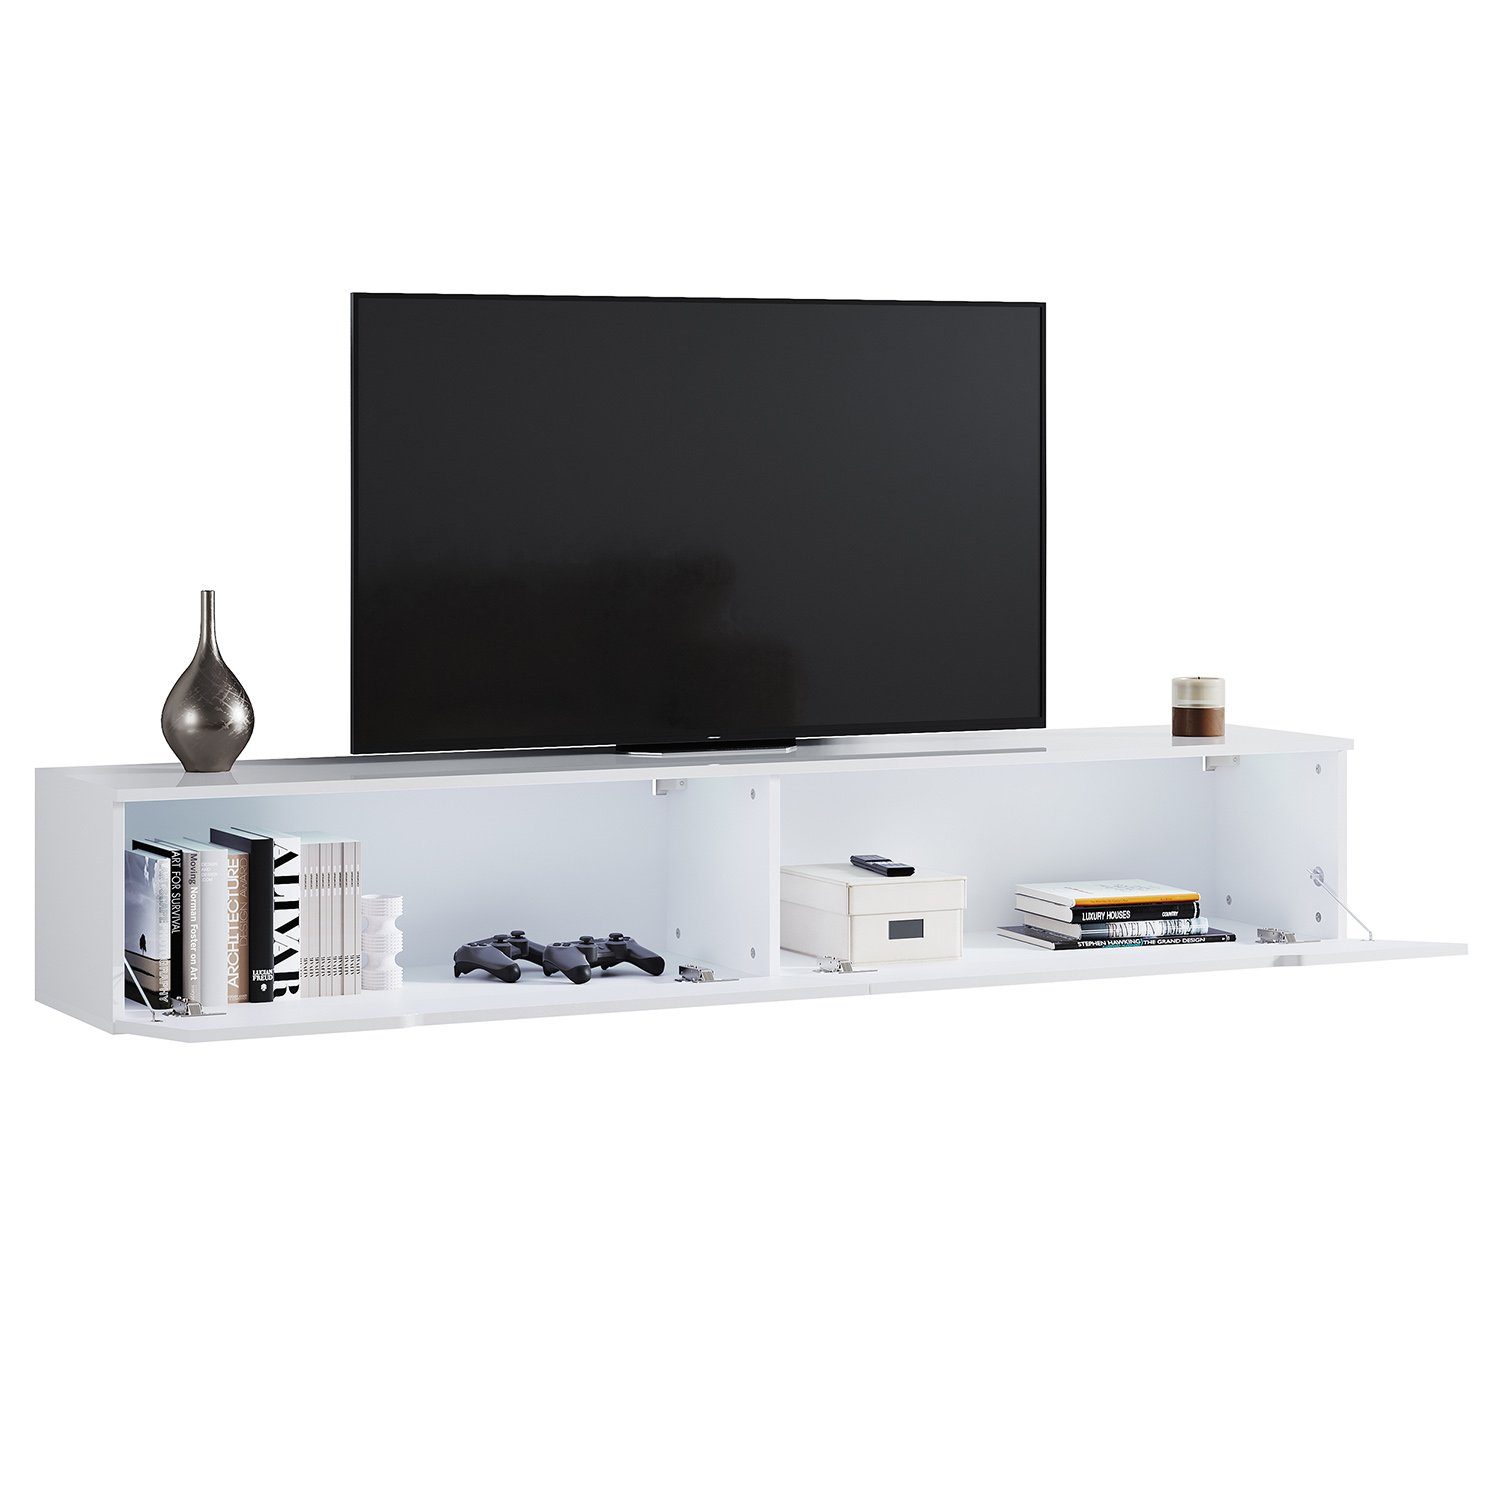 Lowboard TV-Schrank TV Schrank SONNI LED-Beleuchtung,hängend/stehend Hochglanz Lowboard, weiß mit 140/160/180cm